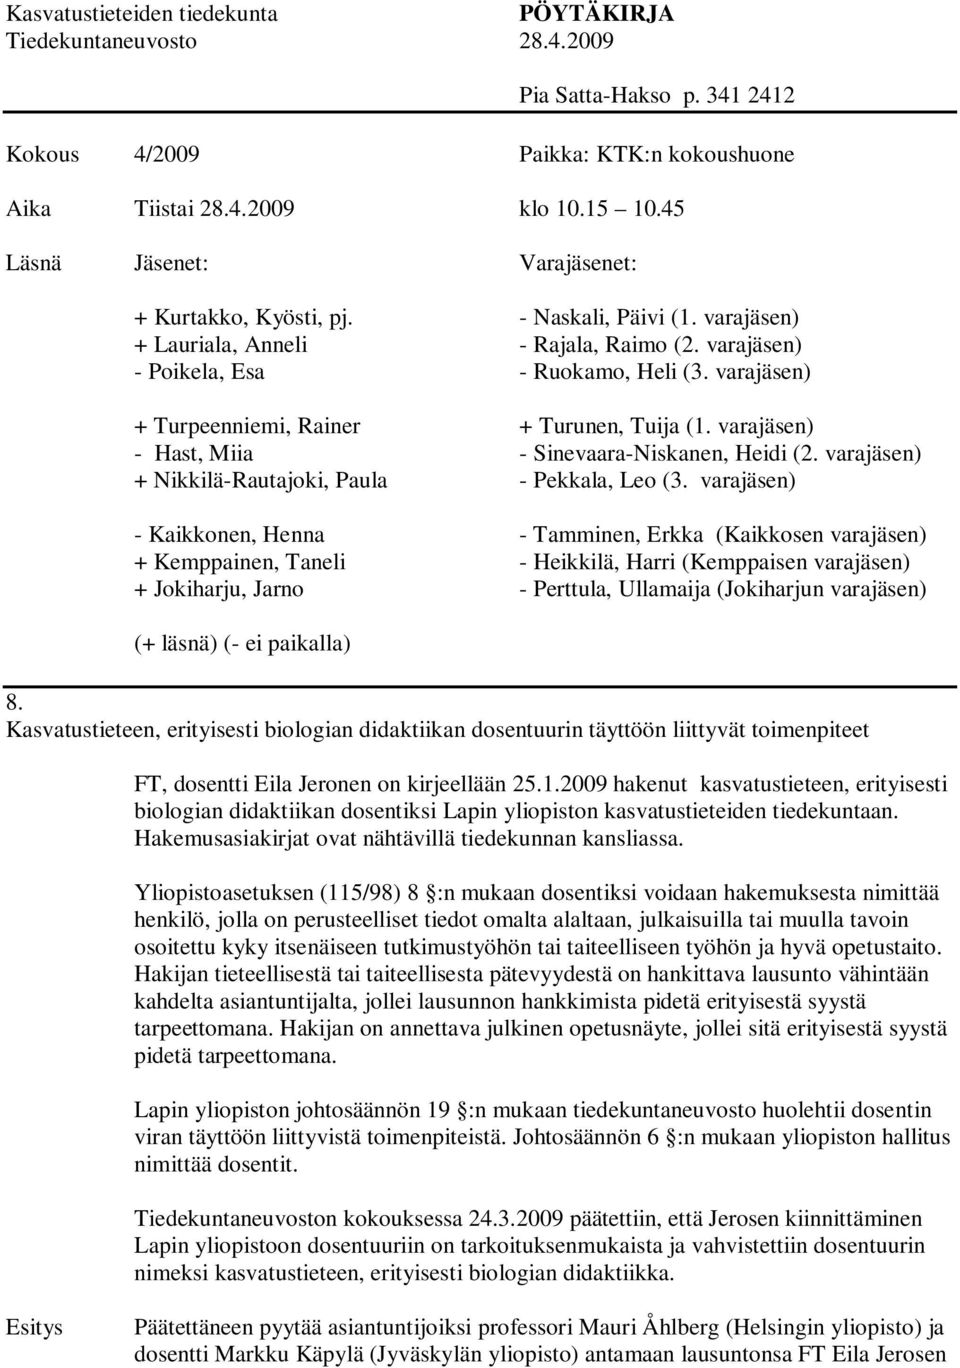 2009 hakenut kasvatustieteen, erityisesti biologian didaktiikan dosentiksi Lapin yliopiston kasvatustieteiden tiedekuntaan. Hakemusasiakirjat ovat nähtävillä tiedekunnan kansliassa.